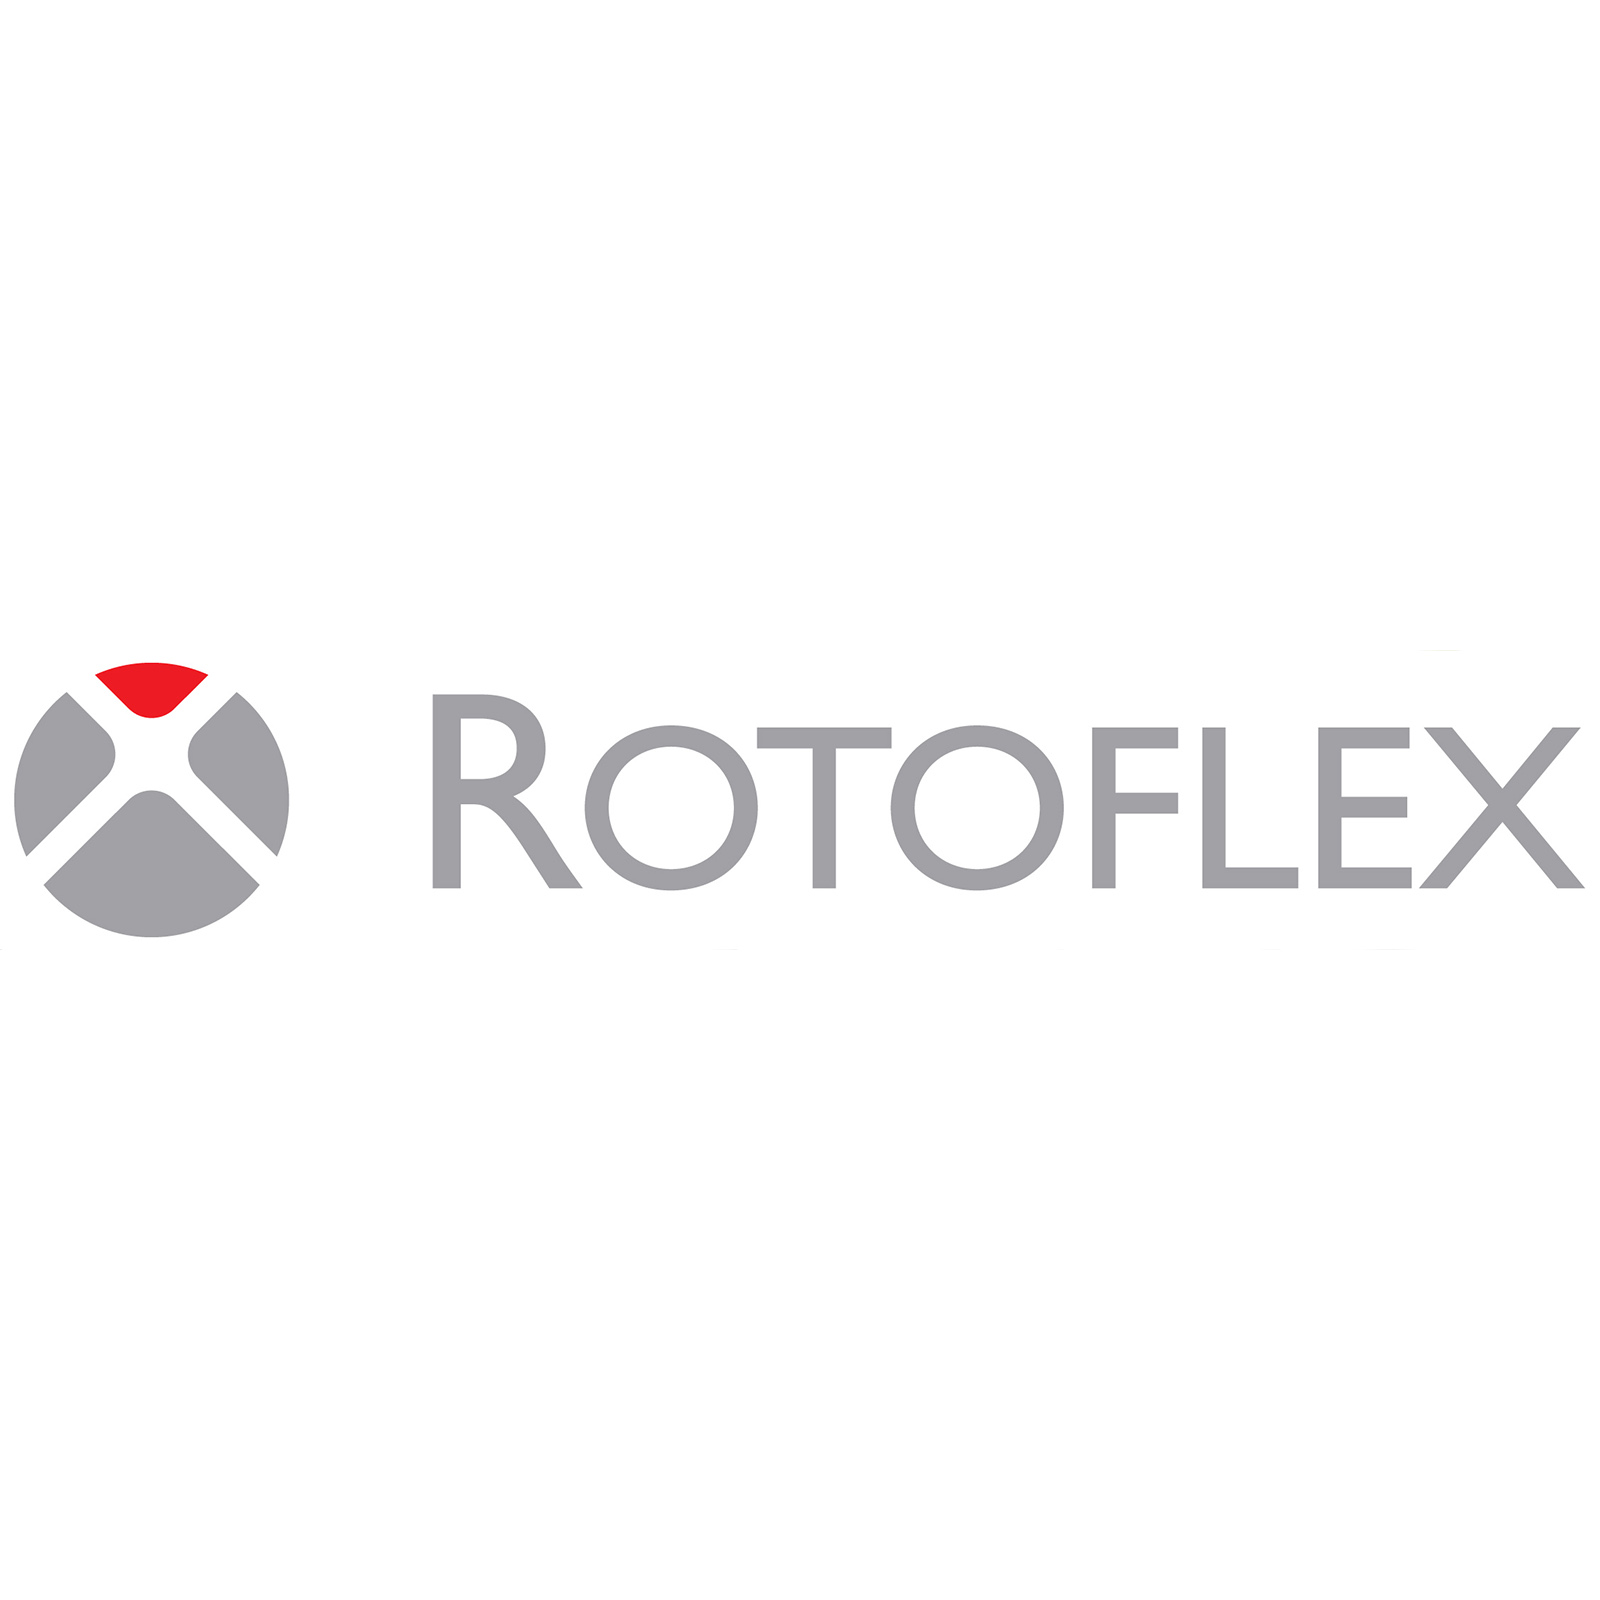 Rotoflex logo